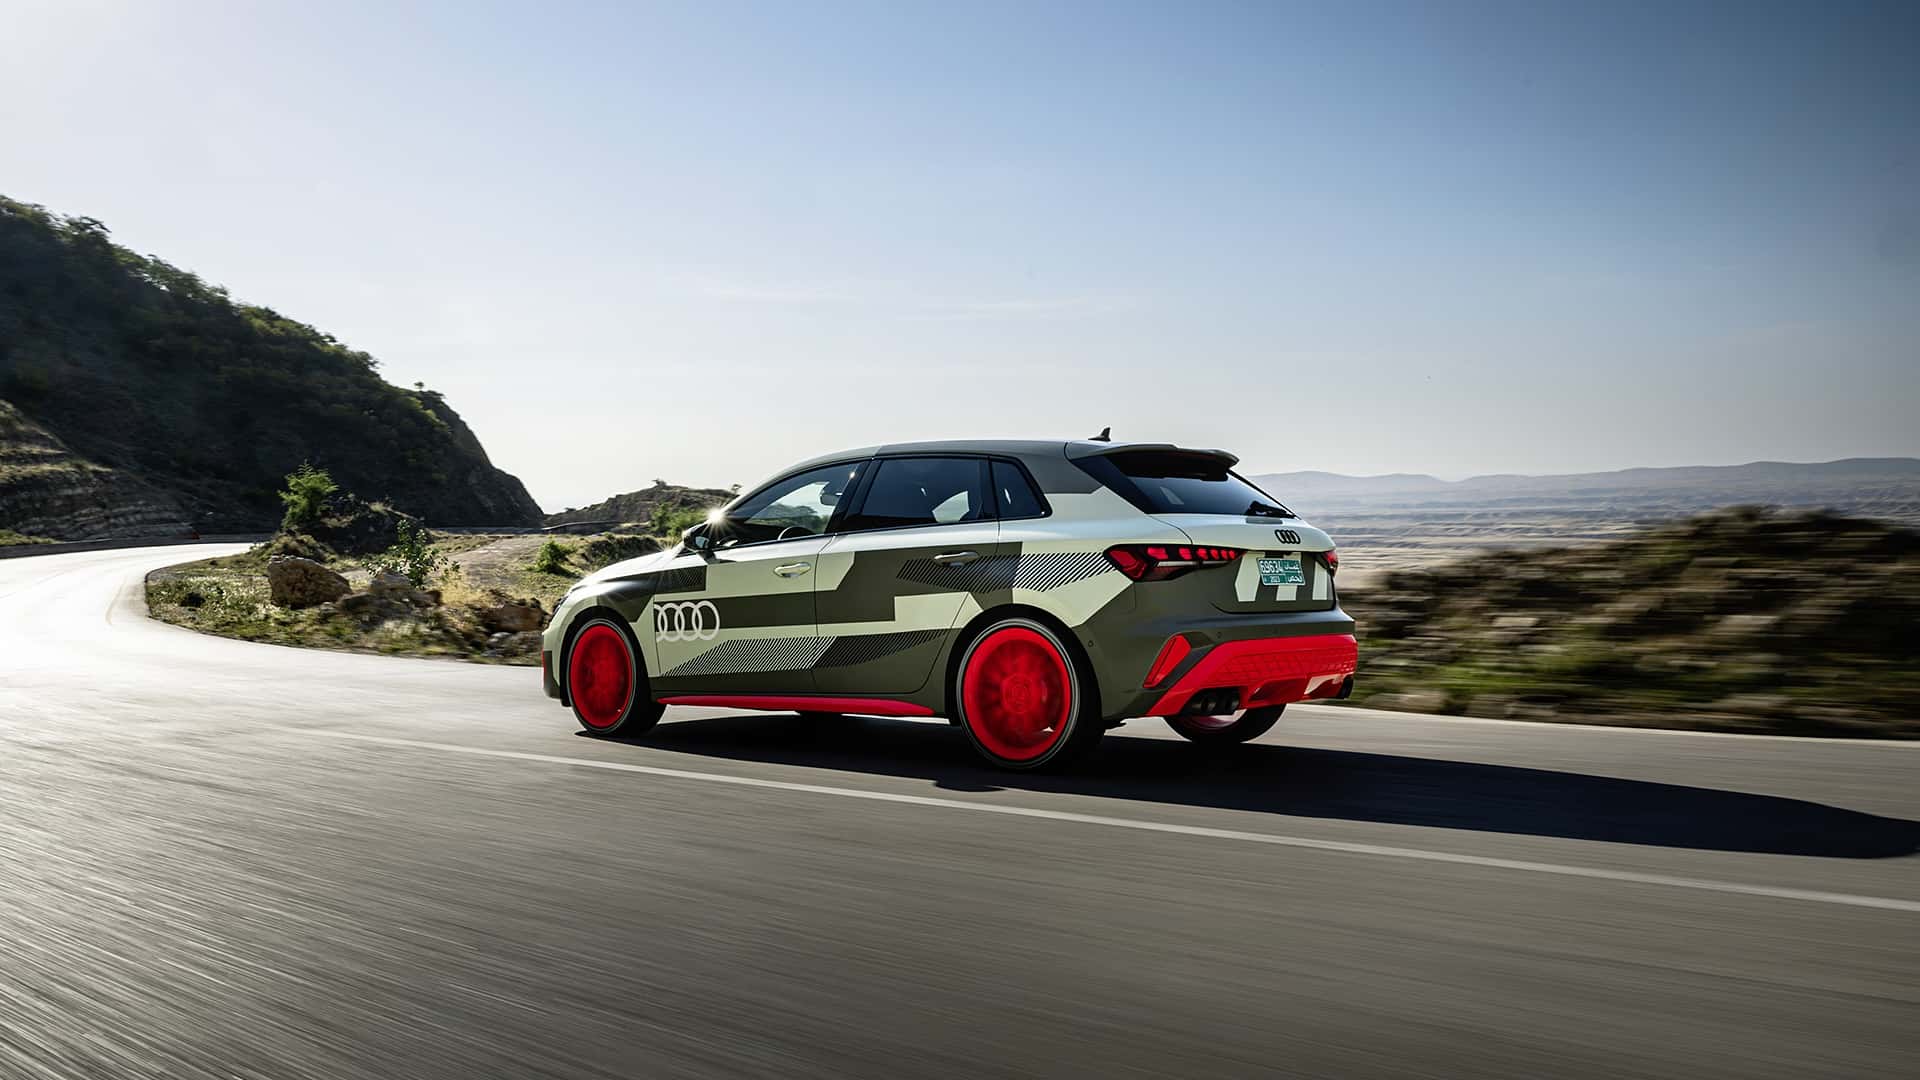 اودي تكشف أول صور لسيارة S3 سيدان فيس ليفت الجديدة بمحرك أقوى وخارجية أكثر رشاقة 23